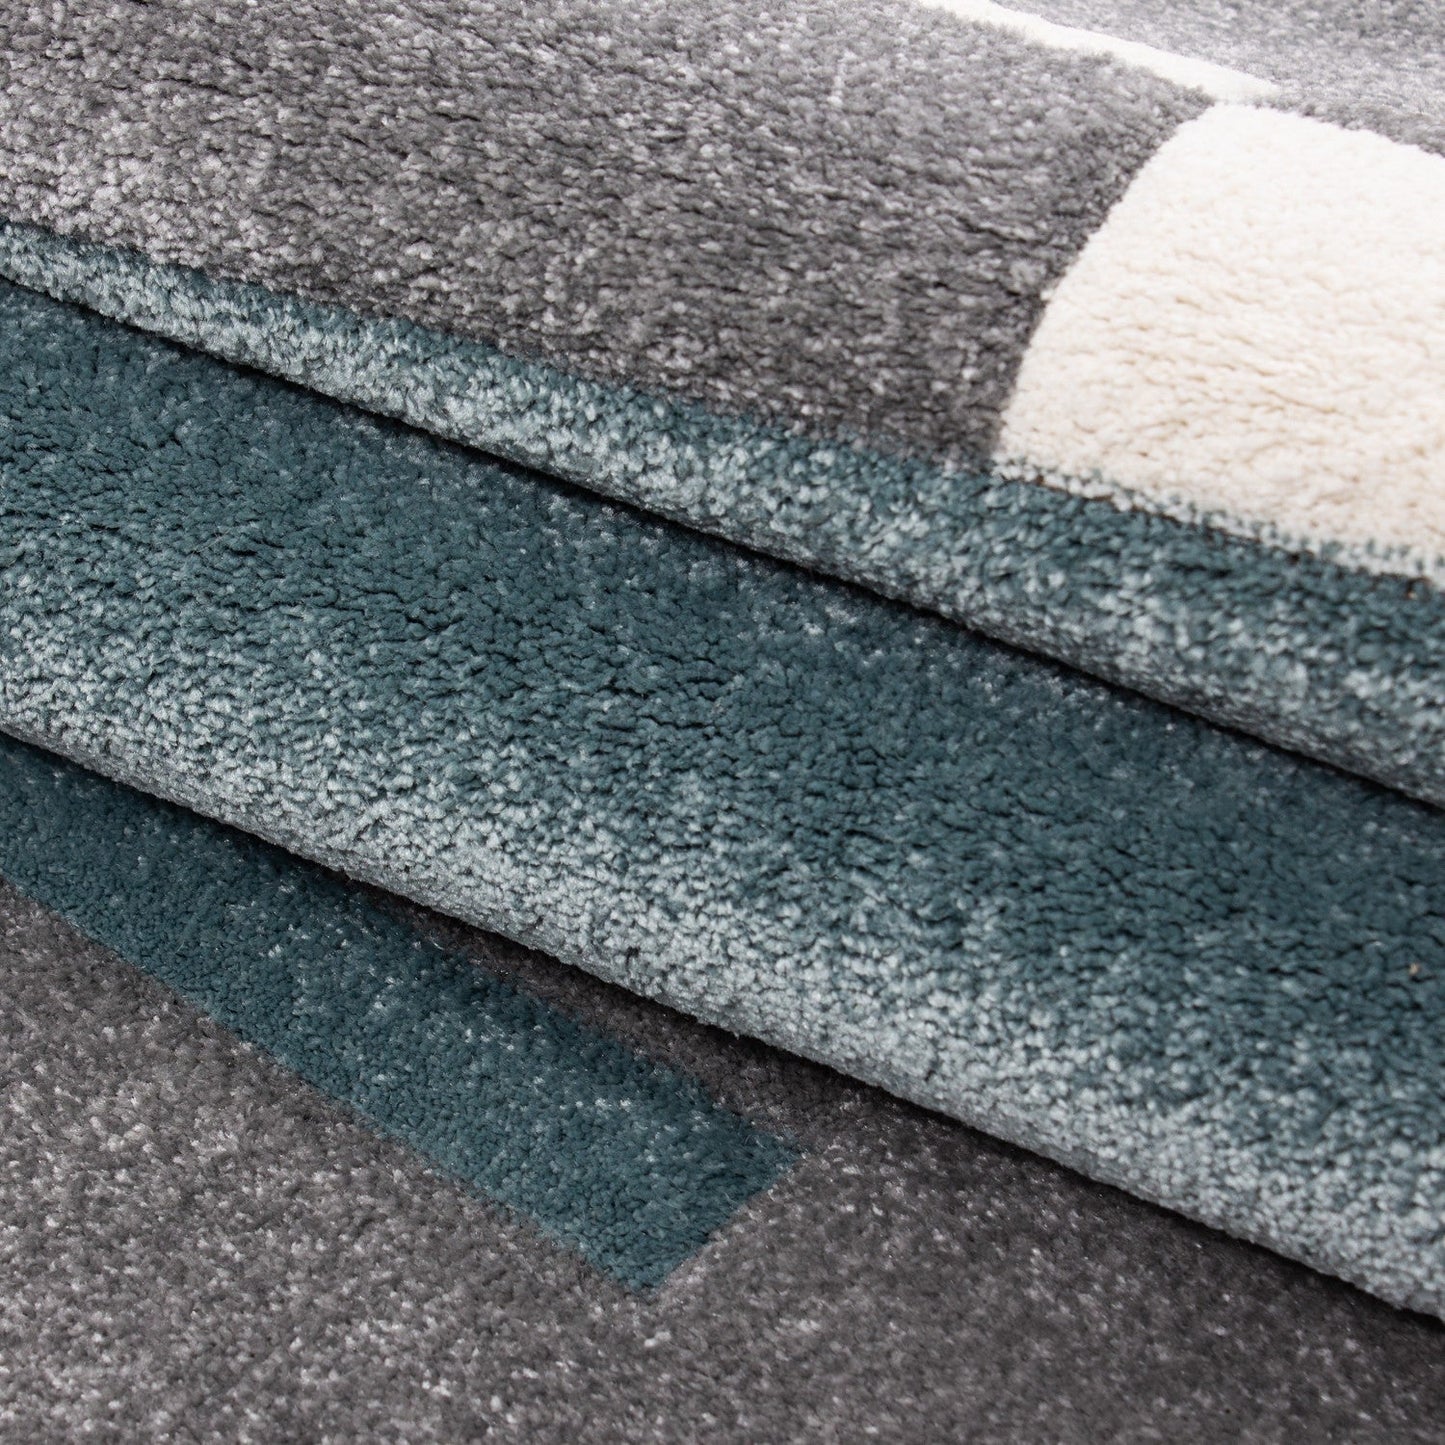 Designer Teppich Modern Kariert Linien Muster Konturenschnitt Grau Weiß Blau